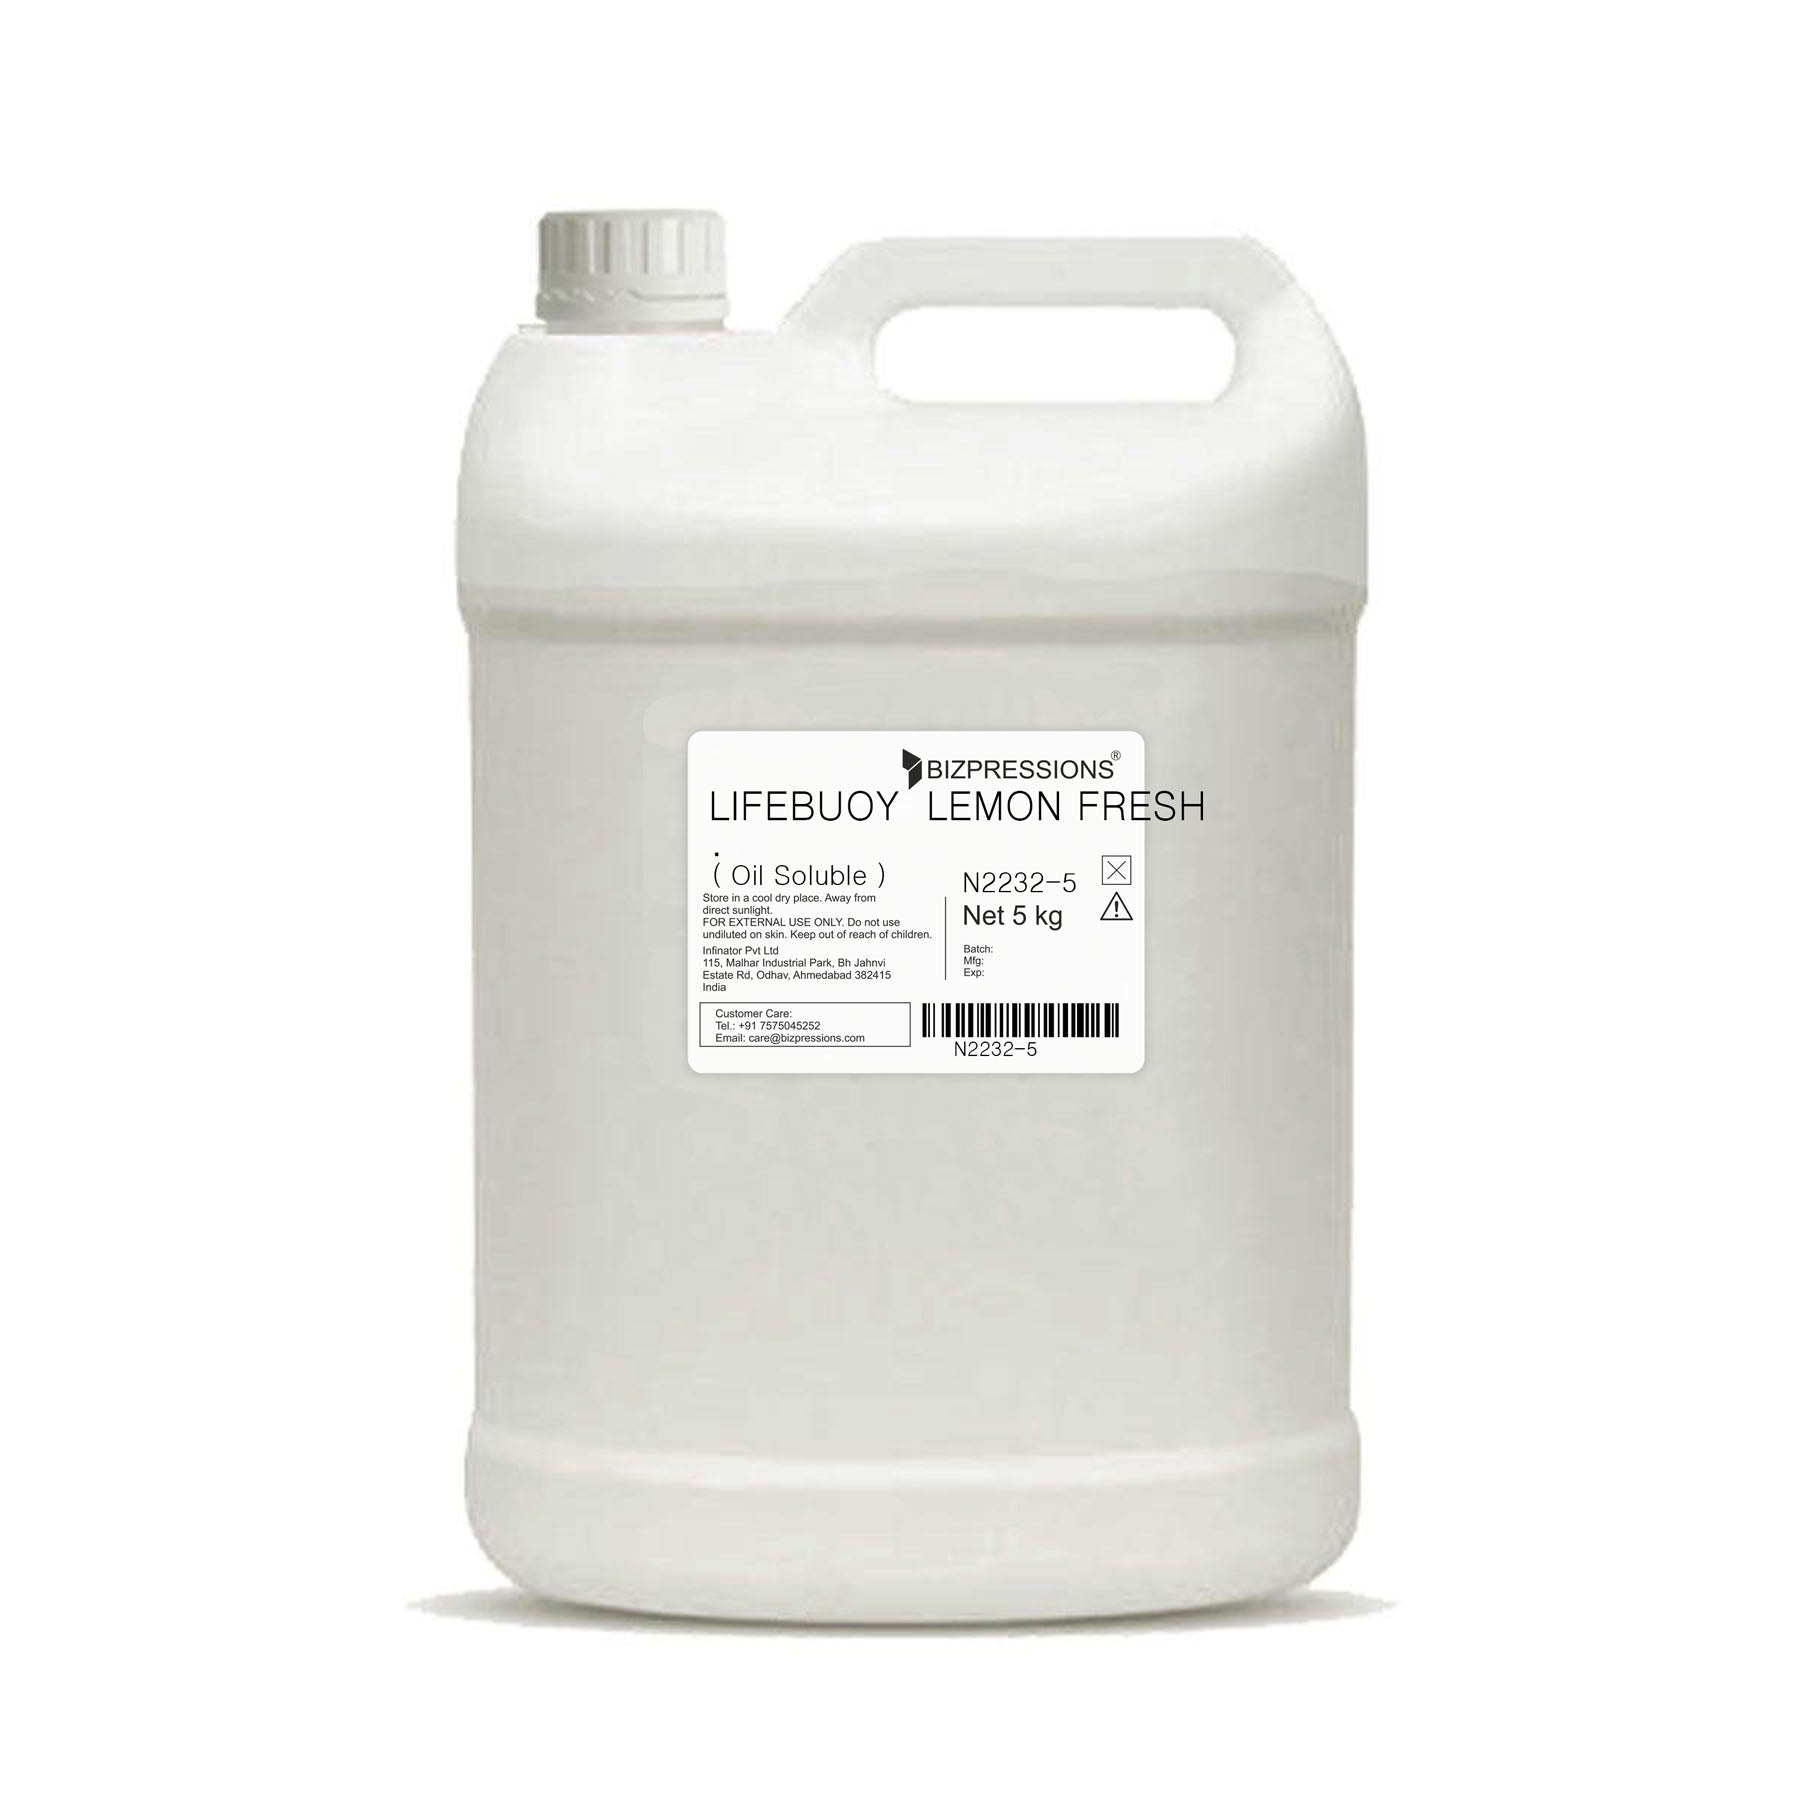 LIFEBUOY LEMON FRESH - Fragrance ( Oil Soluble ) - 5 kg